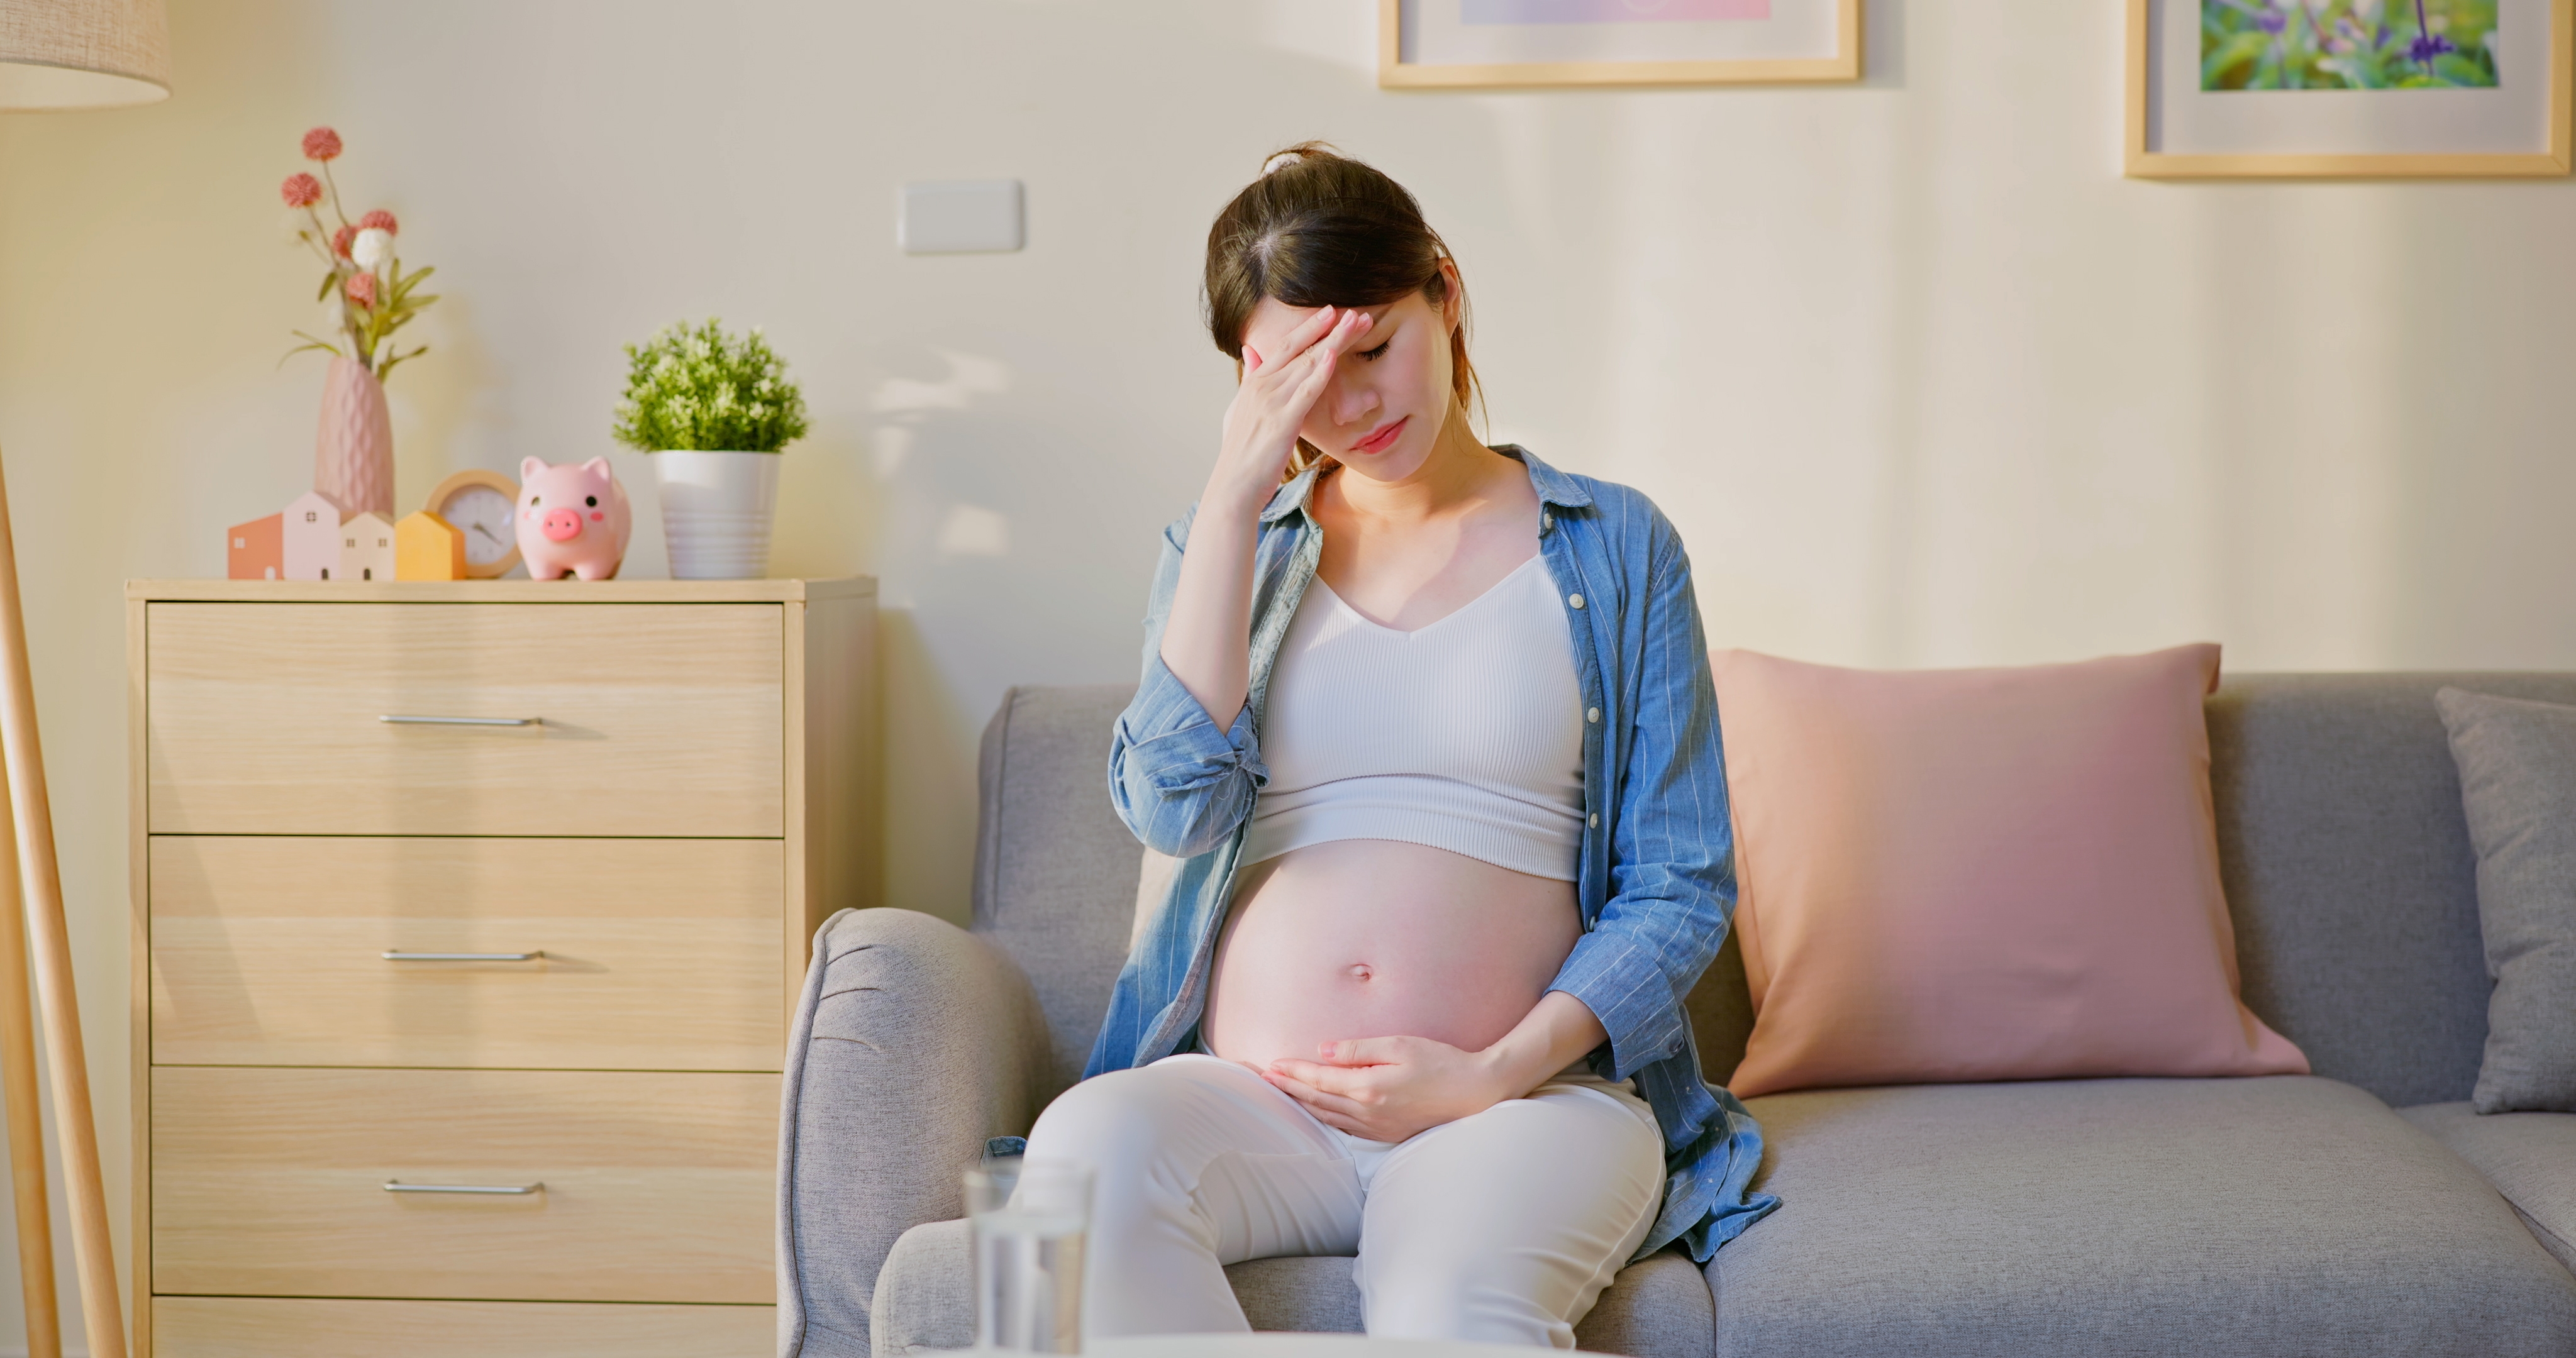 Une femme enceinte assise sur un canapé, la main sur le front | Source : Shutterstock